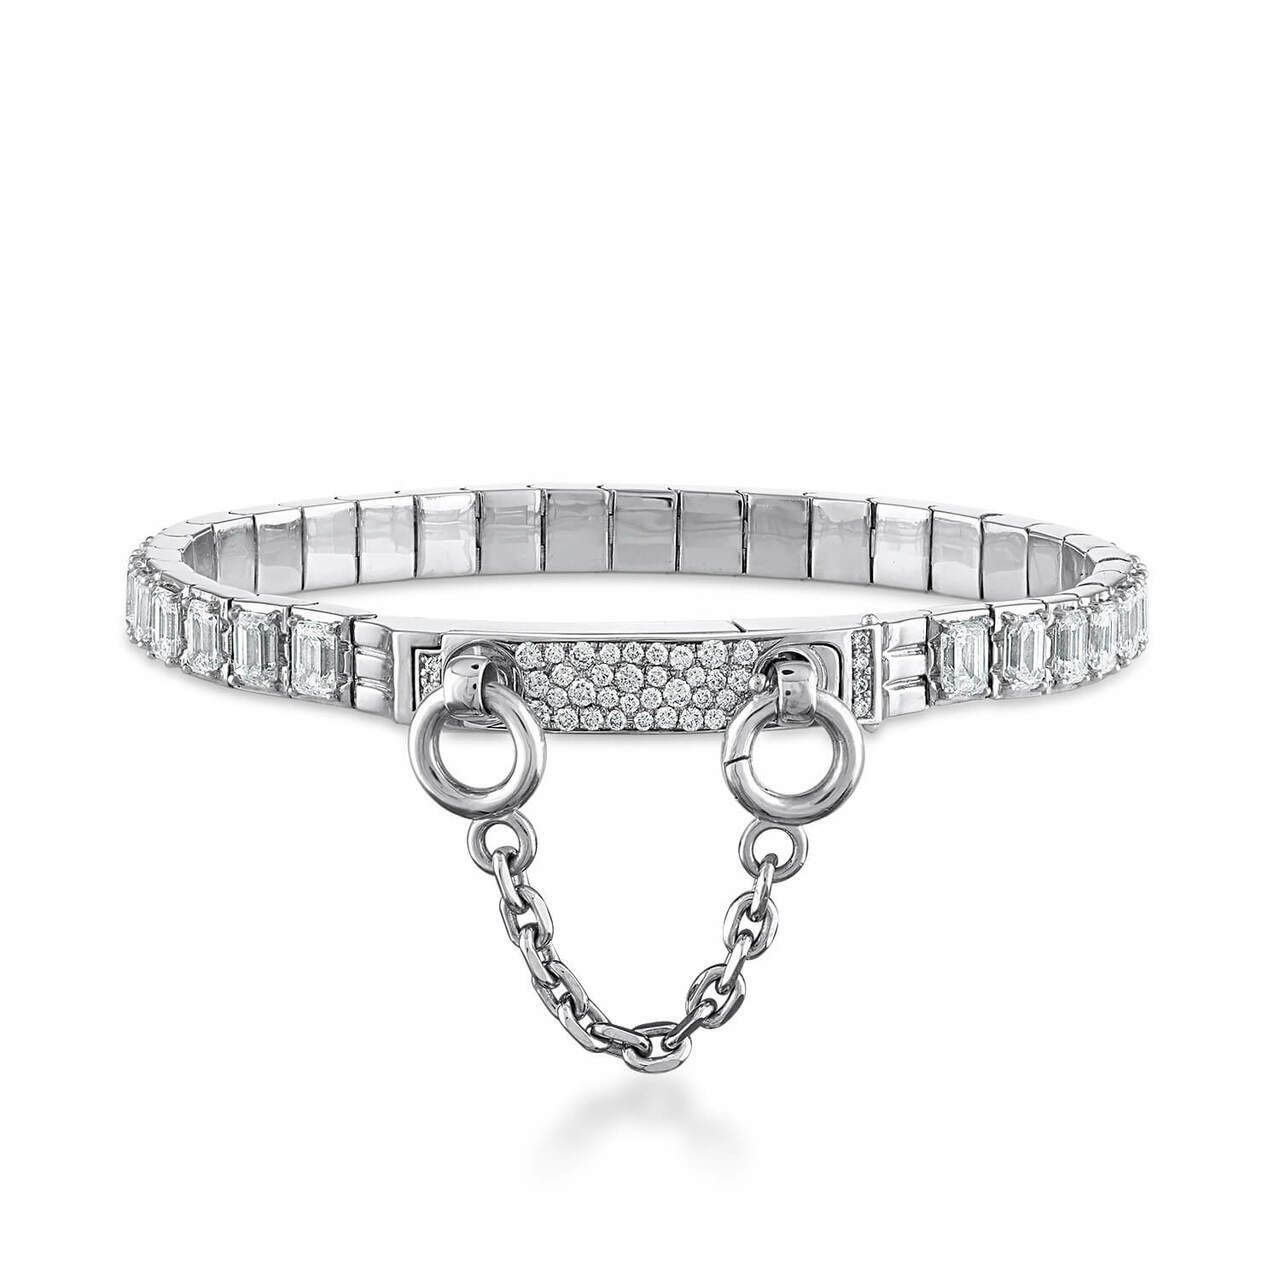 Oath single cuff emerald cut diamond tennis bracelet with pave latch